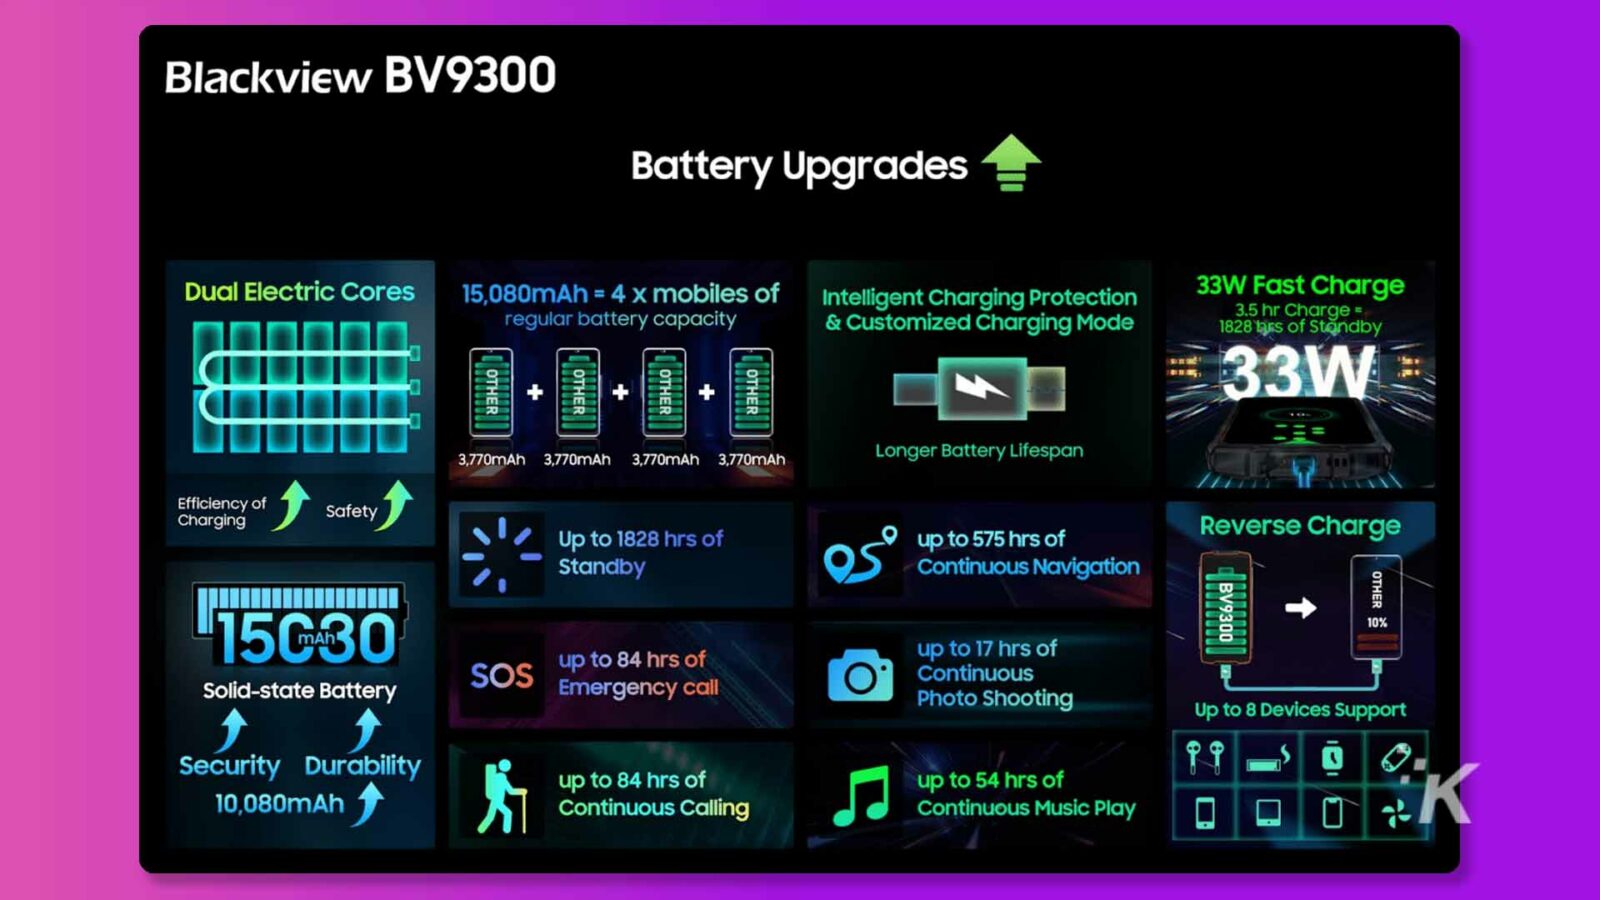 Ten obraz pokazuje funkcje i zalety baterii Blackview BV9300, która ma pojemność 15 080 mAh i szybkie ładowanie 33 W z dostosowanym trybem ładowania, zapewniając dłuższą żywotność baterii, wydajne ładowanie i do 1828 godzin czuwania. Pełny tekst: Aktualizacje baterii Blackview BV9300 Podwójne rdzenie elektryczne 15 080 mAh = 4 x telefony komórkowe z inteligentną ochroną ładowania Szybkie ładowanie 33 W Standardowa pojemność baterii i dostosowany tryb ładowania 3,5 godz. mAh 3770 mAh 3770 mAh Dłuższa żywotność baterii Efektywność ładowania Bezpieczeństwo Do 1828 godzin do 575 godzin odwrotnego ładowania Gotowość Ciągła nawigacja INNE BV9300 15G30 do 84 godzin baterii półprzewodnikowej SOS Do 17 godzin połączenia alarmowego O Zdjęcia ciągłe Obsługa do 8 urządzeń Zabezpieczenia Trwałość 10 080 mAh do 84 godzin do 54 godzin ciągłego dzwonienia Ciągłe odtwarzanie muzyki